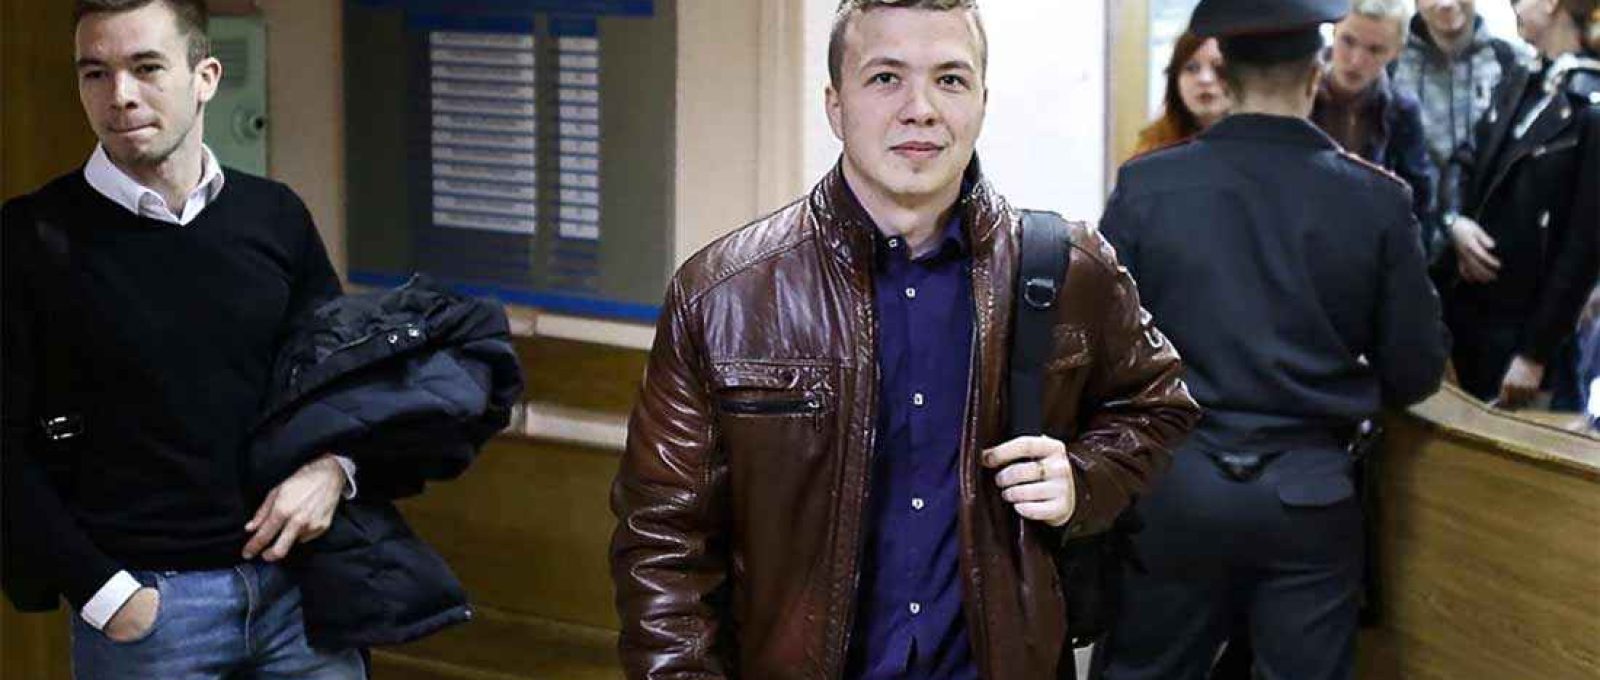 O ativista Roman Protasevich, preso neste fim-de-semana em Minsk (Foto: Stringer/Reuters).